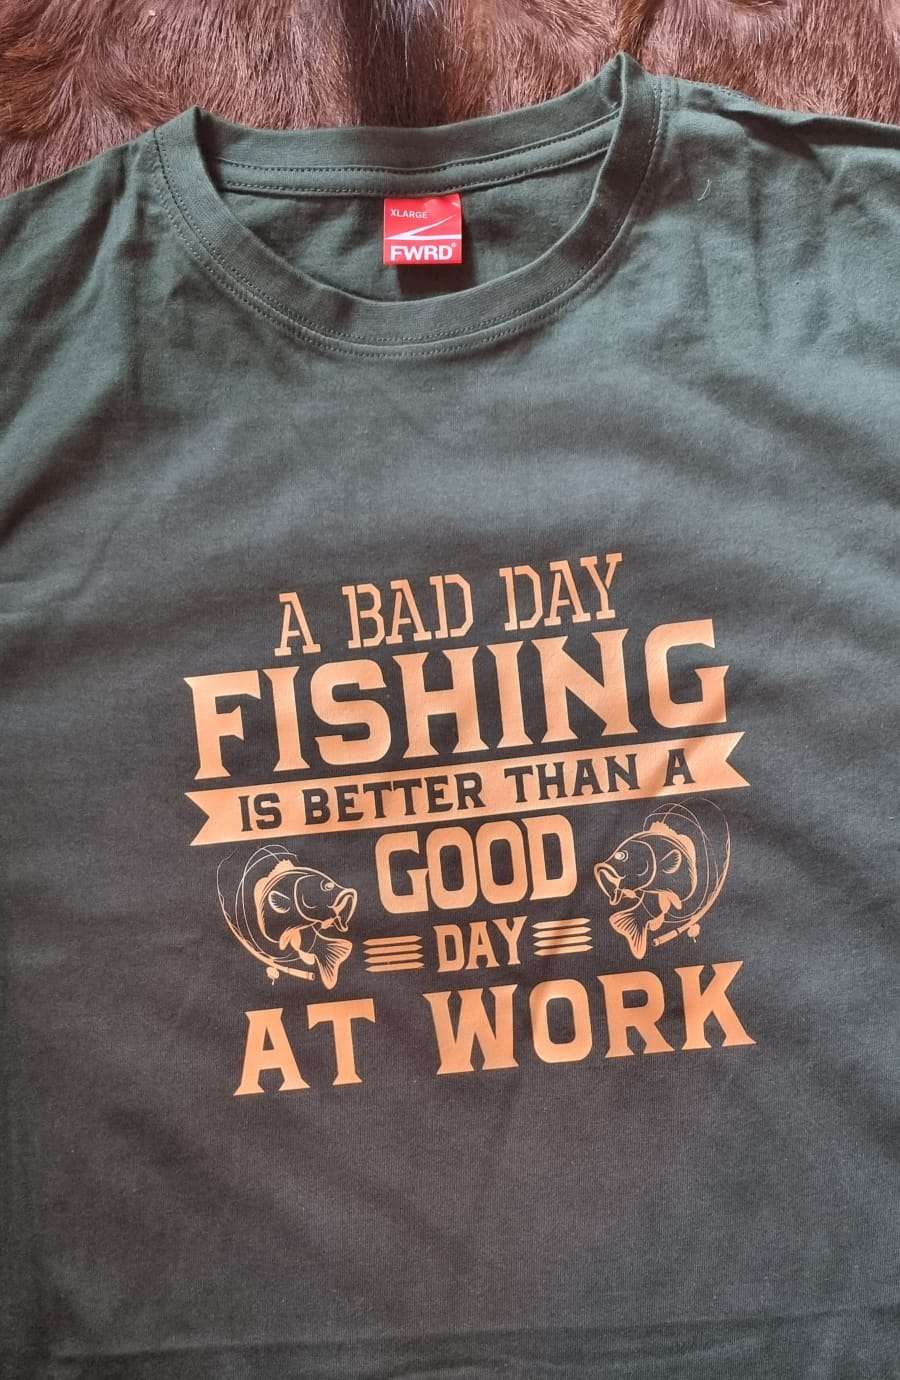 Fishing TShirts